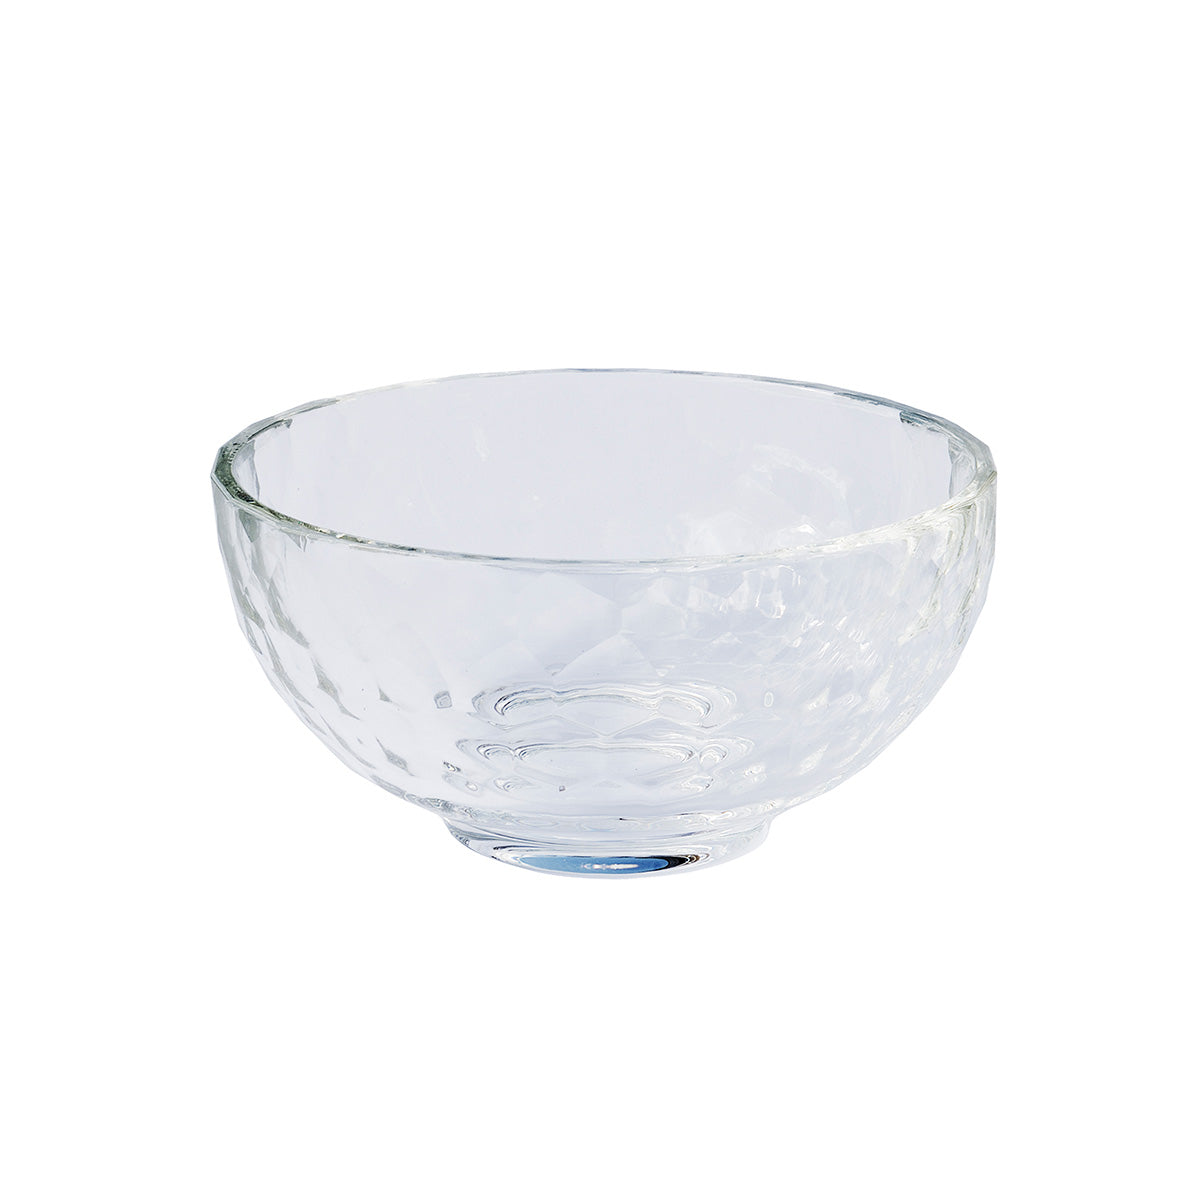 Storm crystal bowl Ø12 cm - ready